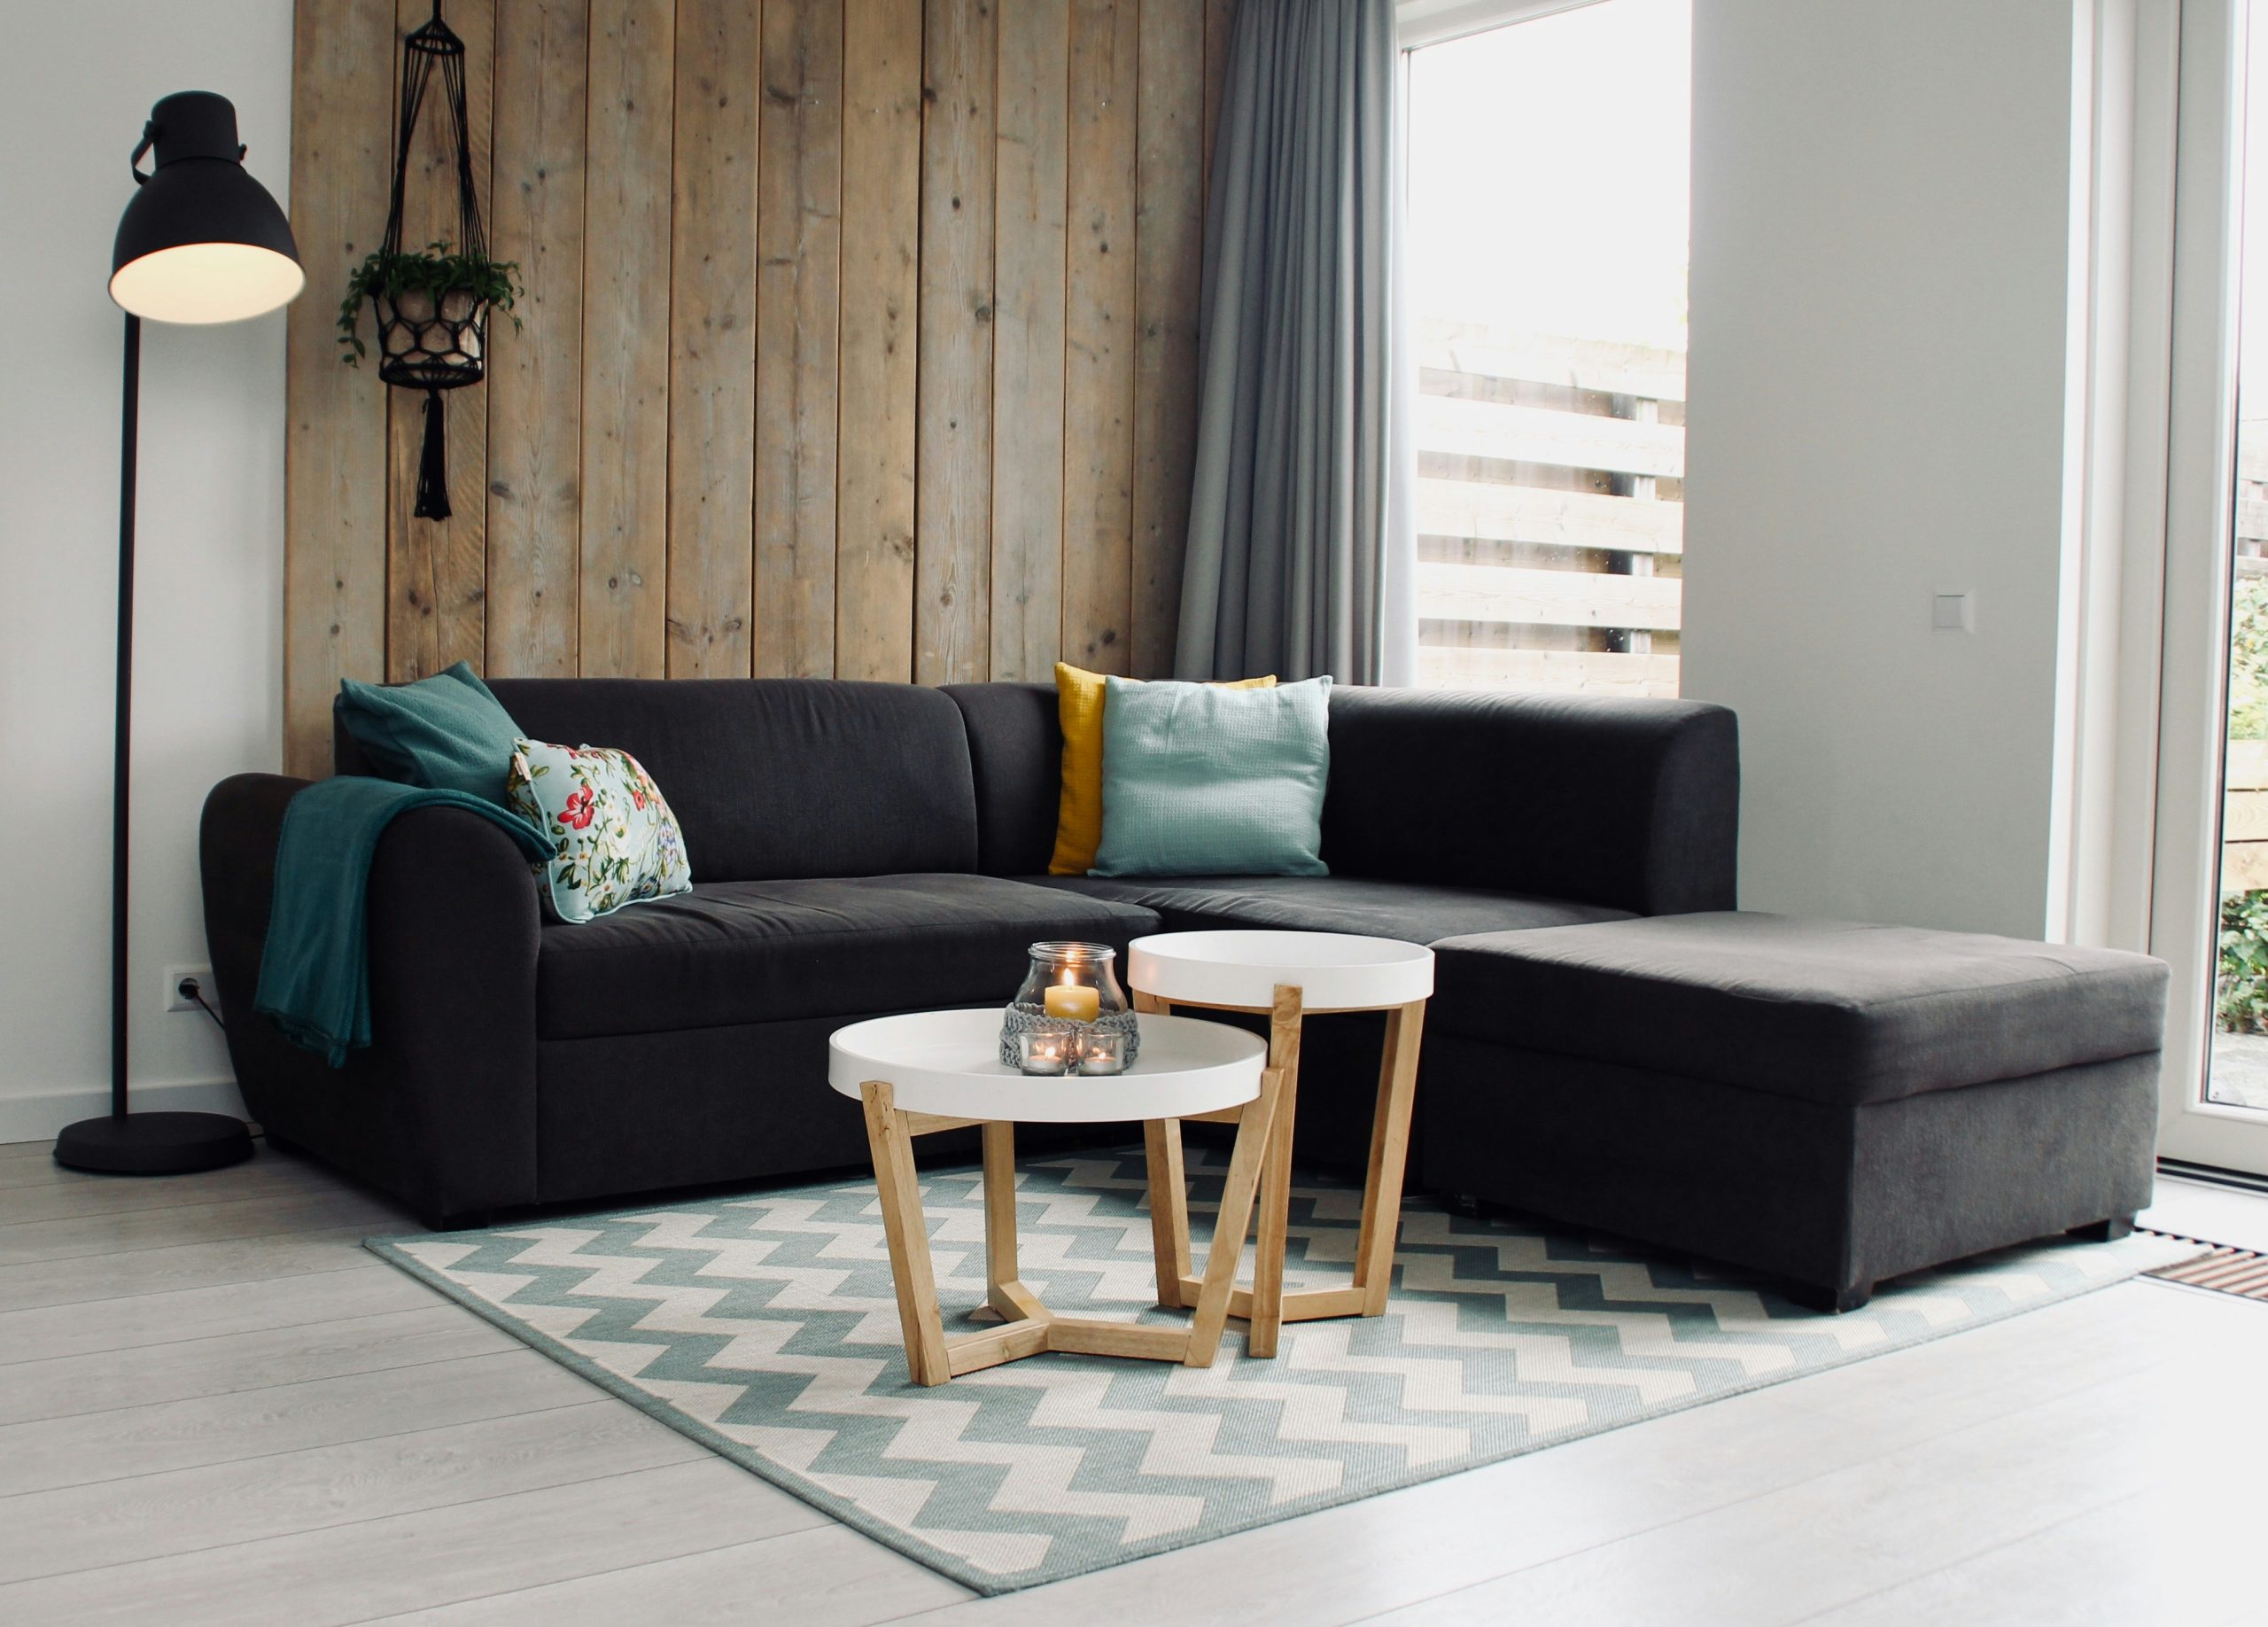 Luxury Sofa Set Price